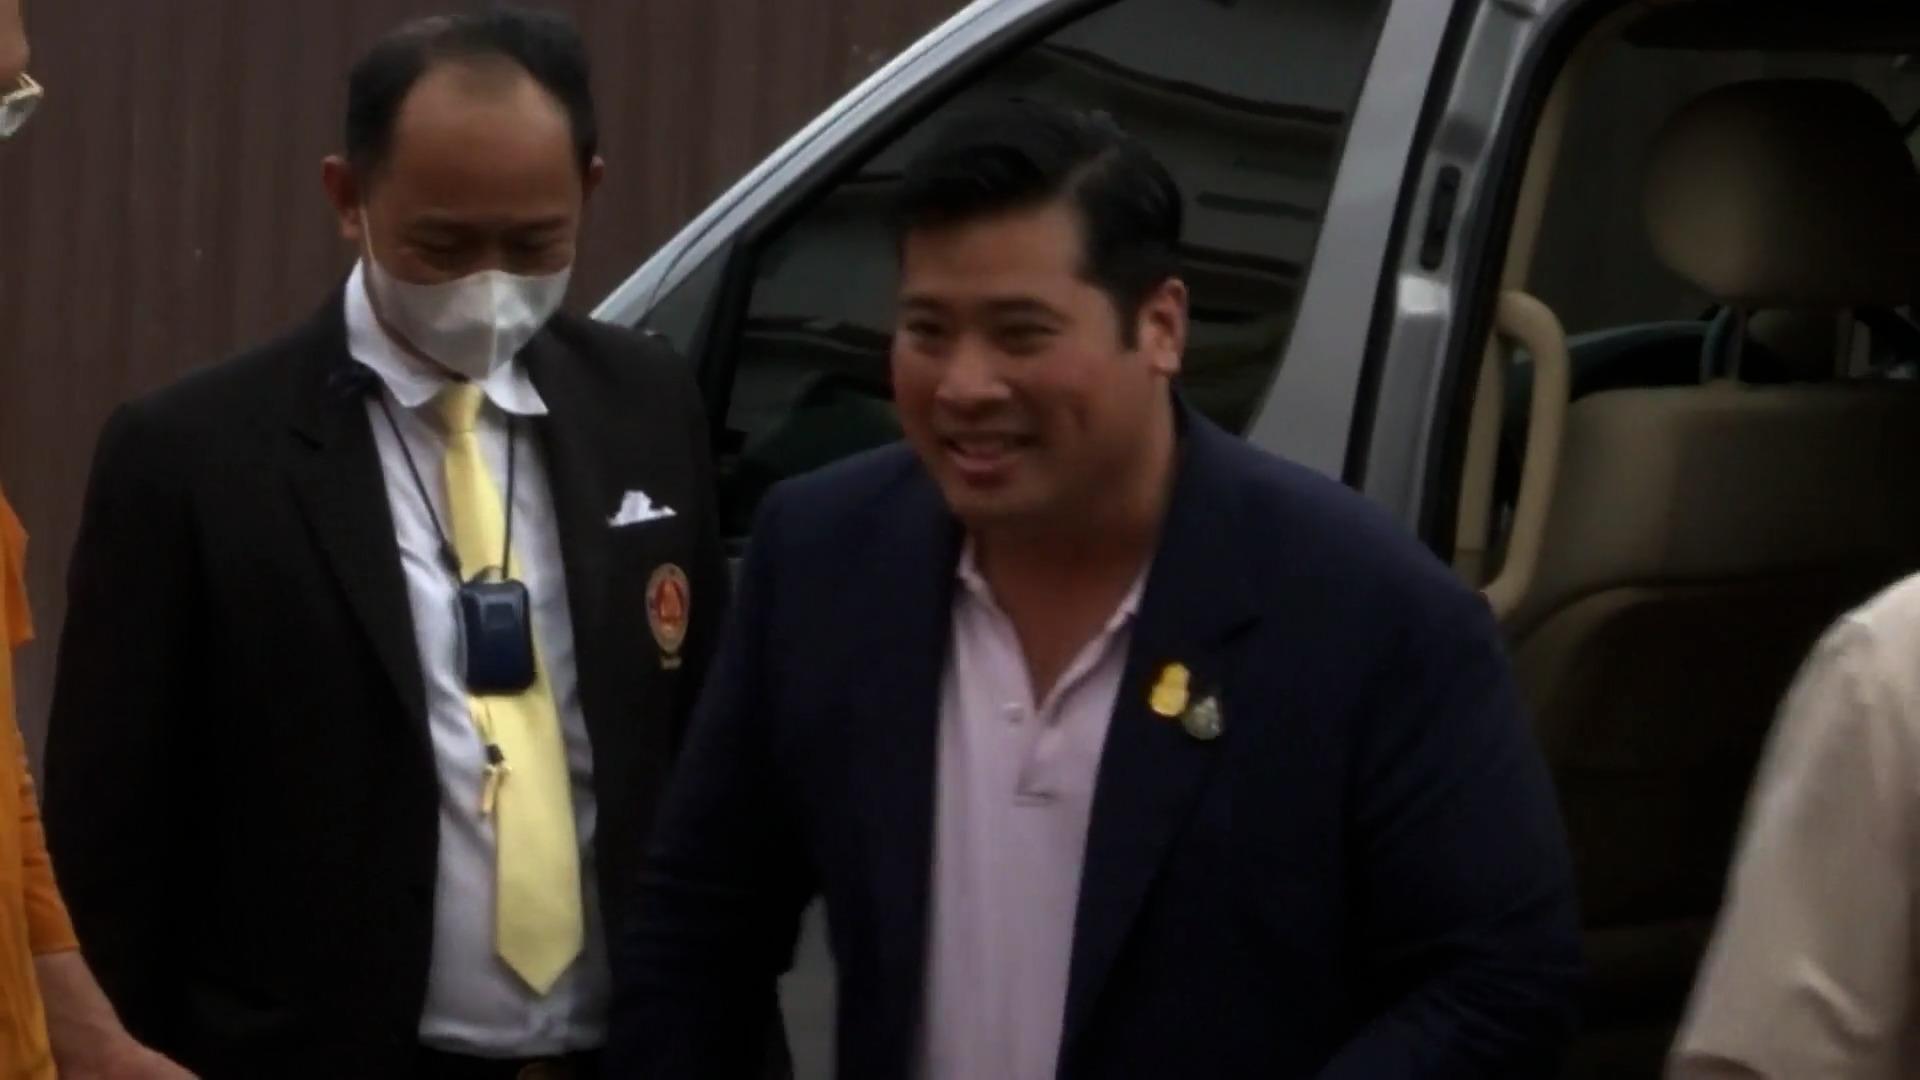 Sohn des Thai-Königs wieder in Thailand aufgetaucht Nach fast 30 Jahren